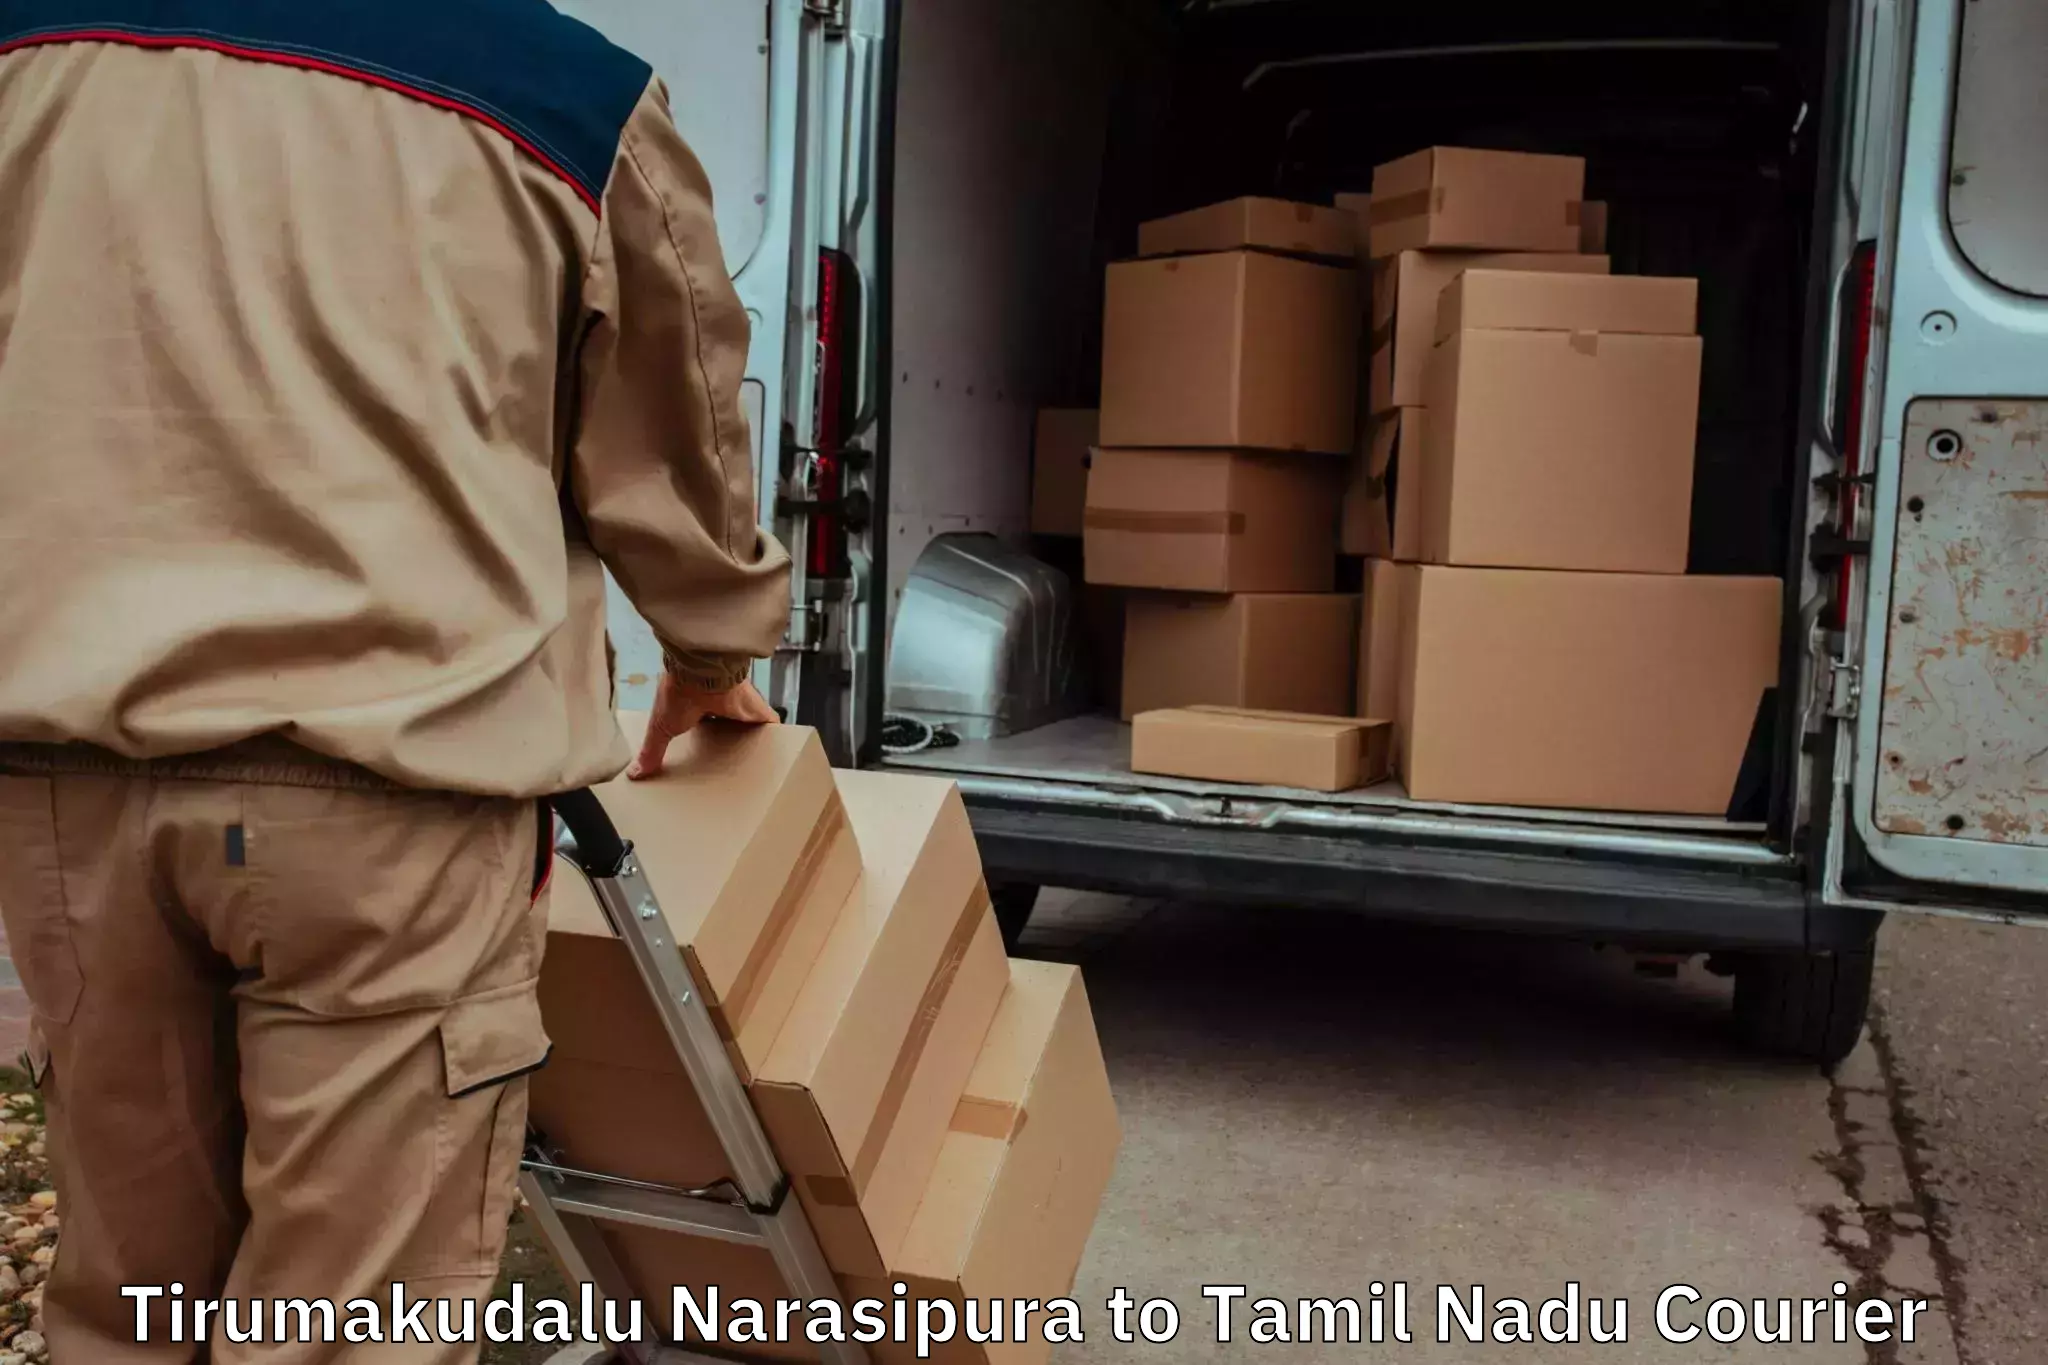 Efficient furniture transport Tirumakudalu Narasipura to Eraiyur